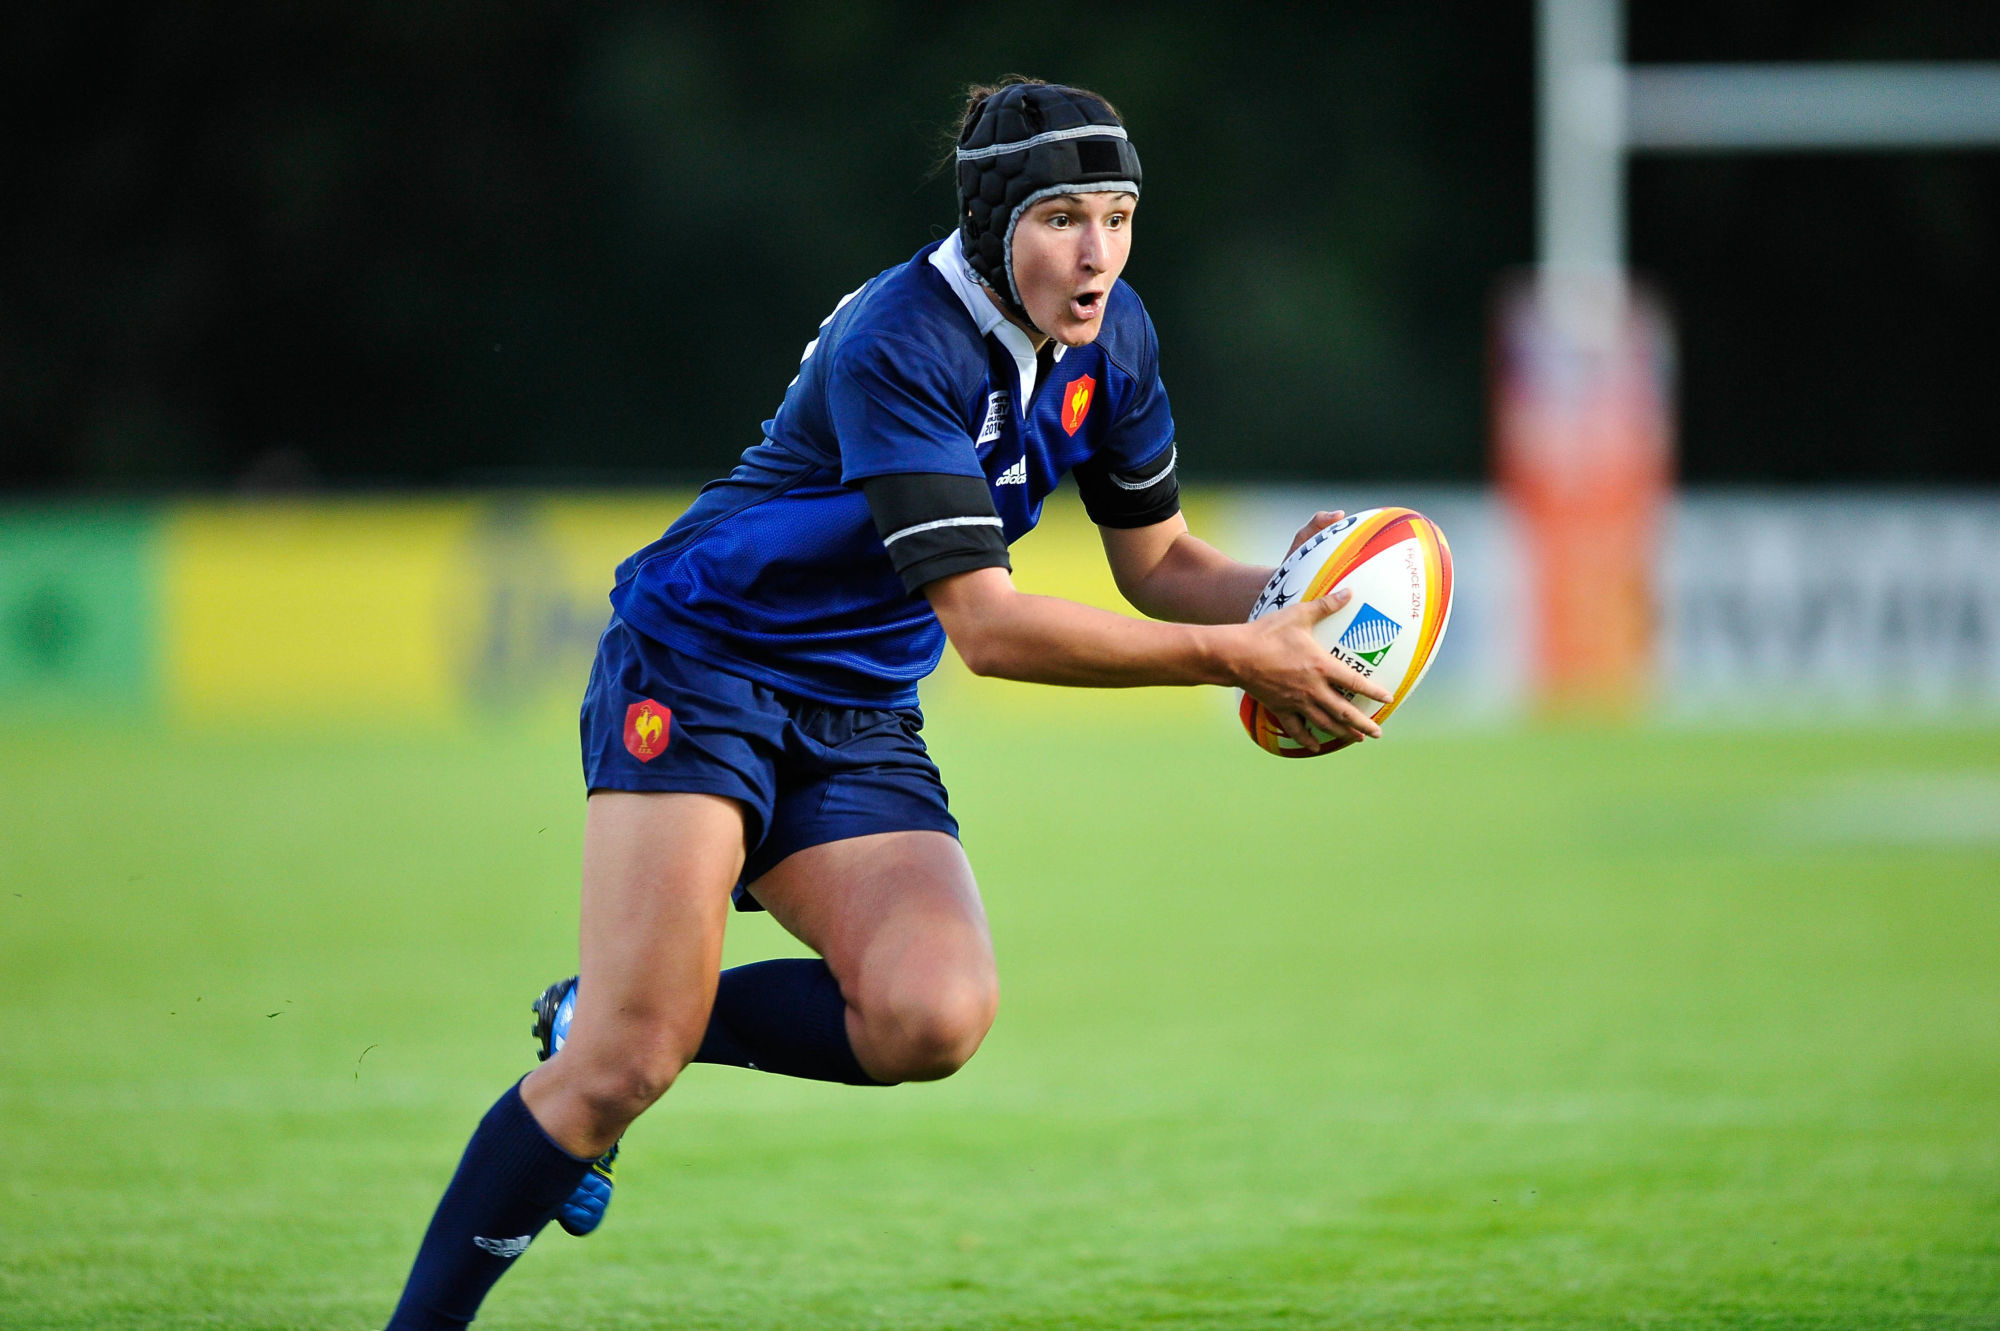 Shannon Izar - 01.08.2014 - France / Pays de Galles - Rugby feminin - Coupe du Monde -Marcoussis